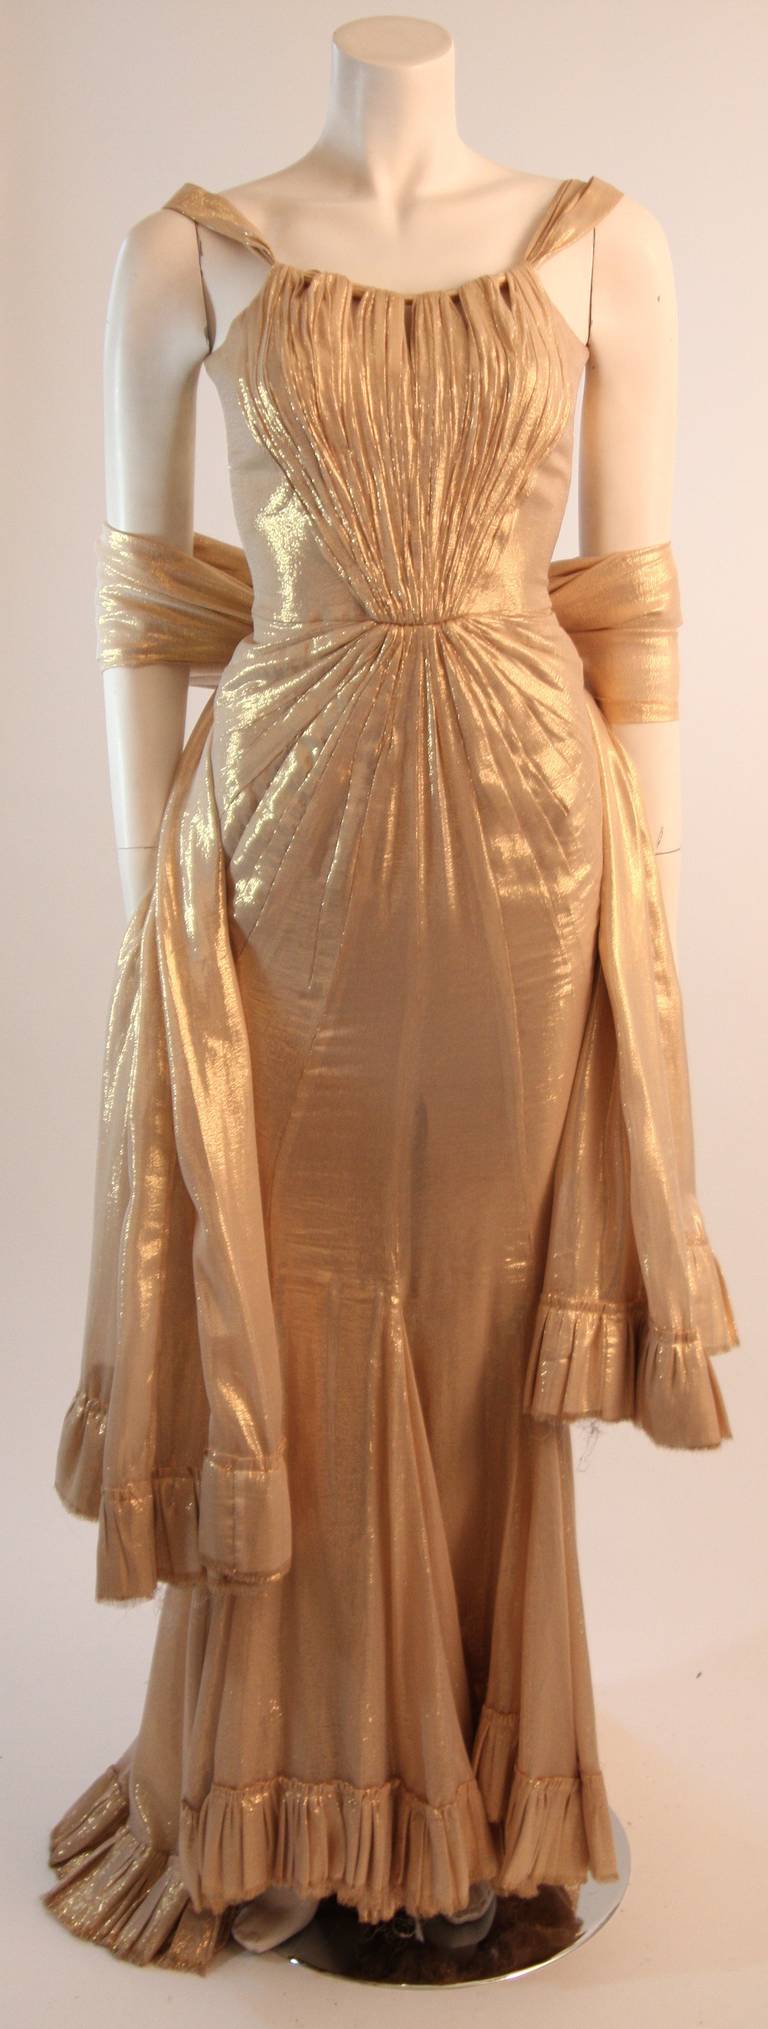 Dieses exquisite Kleid aus feinstem Goldseiden-Lamé präsentiert eine wunderschöne, körperumspielende Silhouette mit ausgestelltem Saum. Das Mieder in der vorderen Mitte ist mit handgefertigten Details versehen. 

Dies ist eine Couture-Bestellung